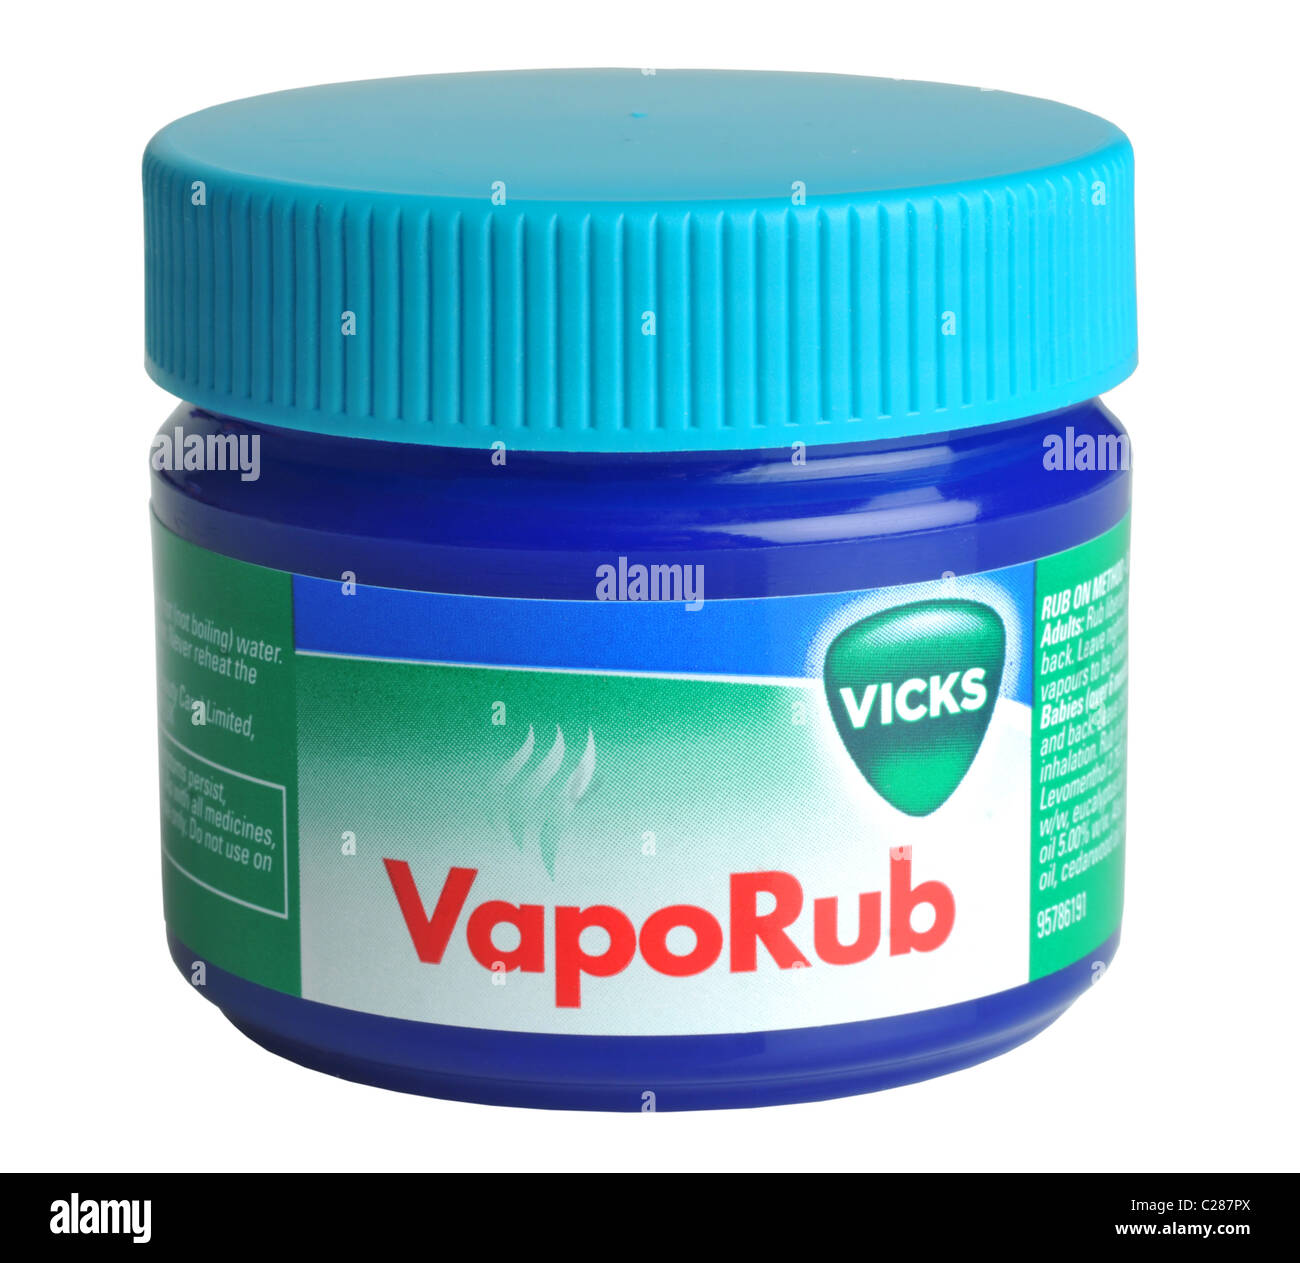 Vick VapoRub Inhalador, alivia la congestión nasal rápidamente